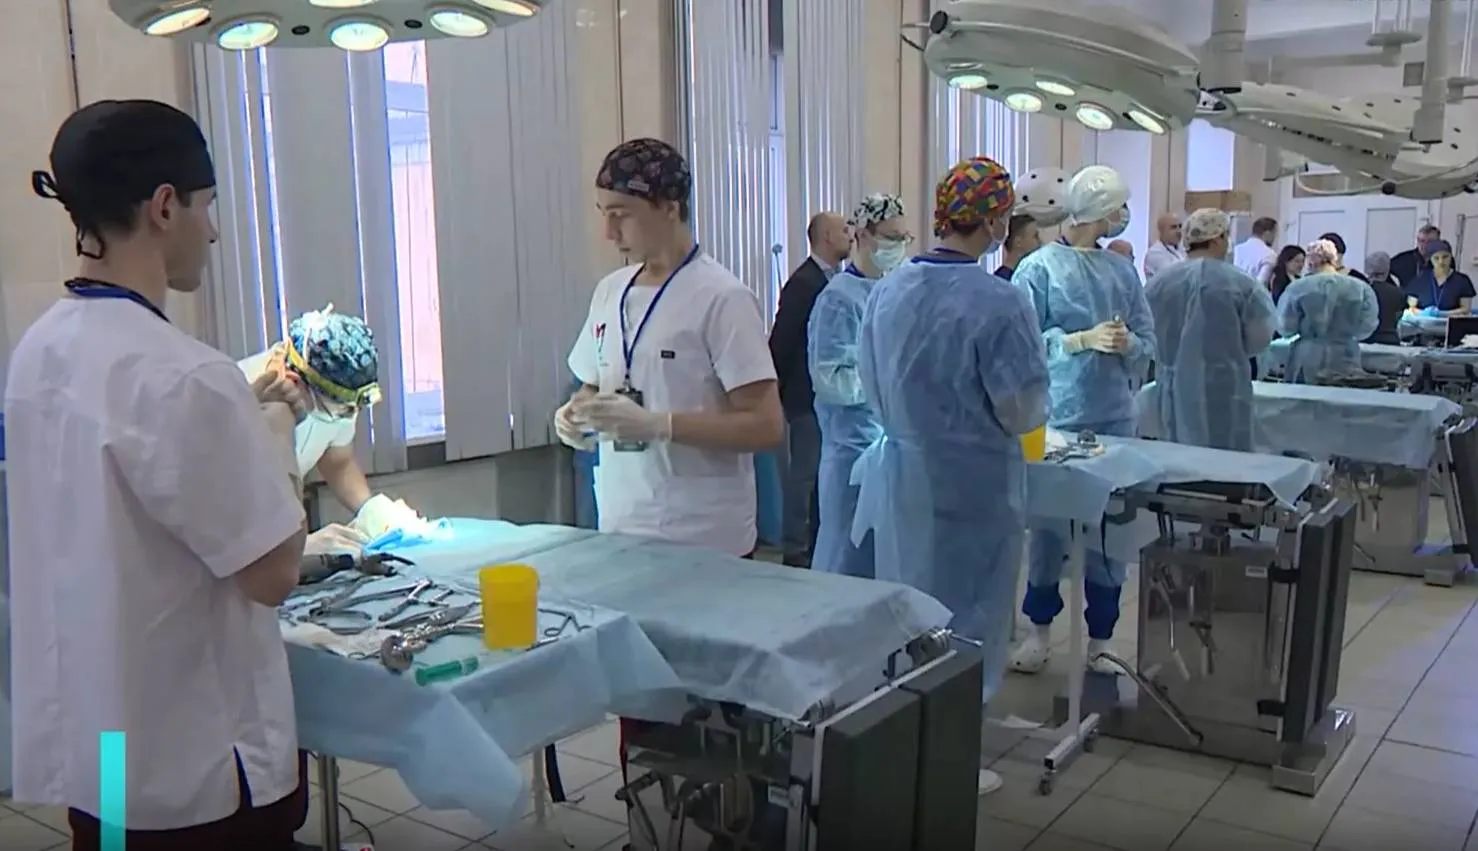 Студенческая олимпиада по нейрохирургии стартовала в Петербурге